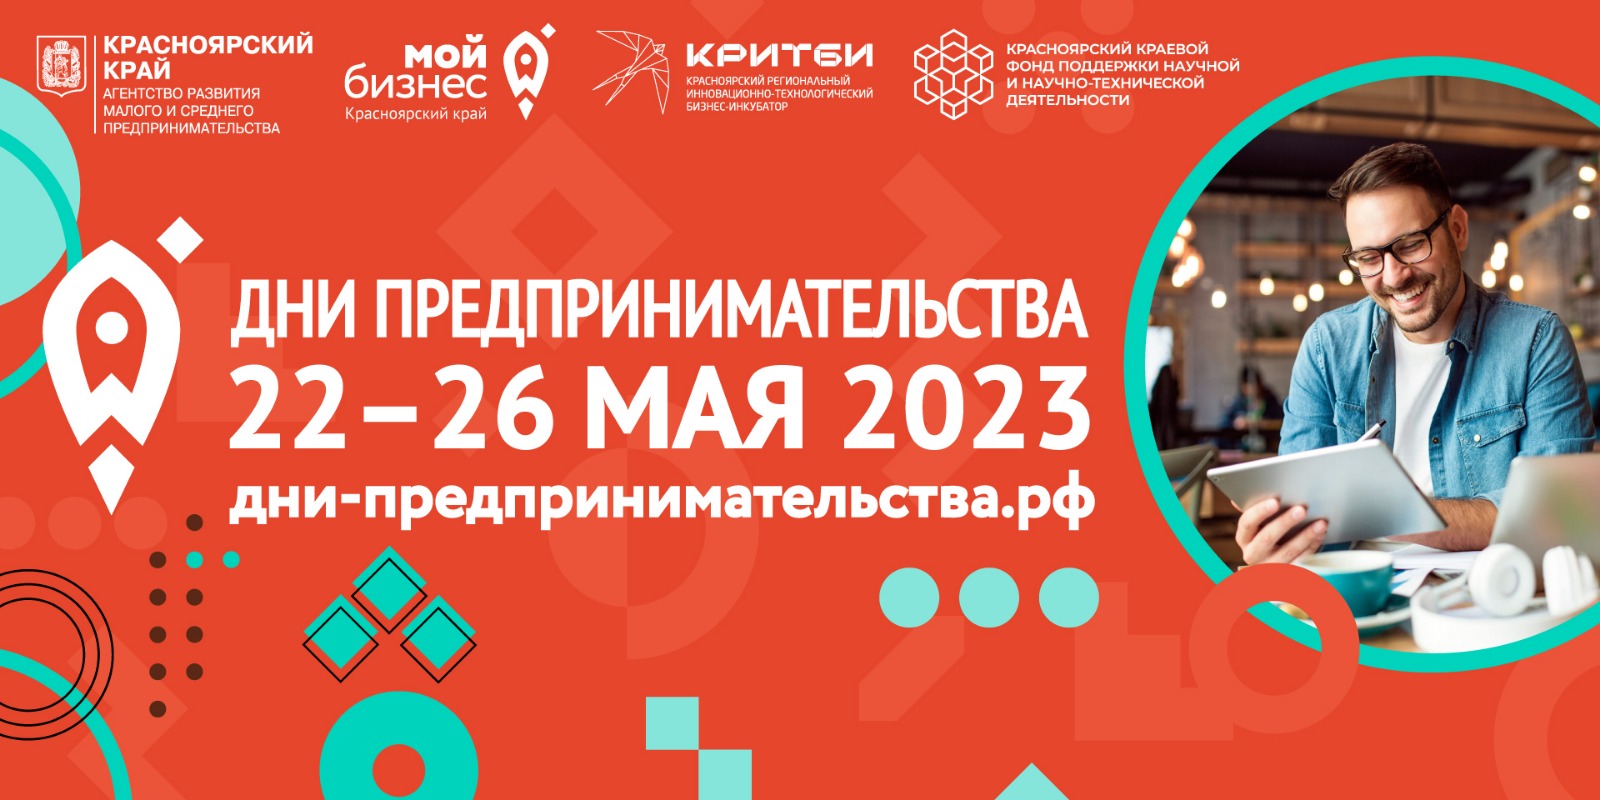 «Интересно будет всем»: в Красноярском крае пройдёт форум для предпринимателей.